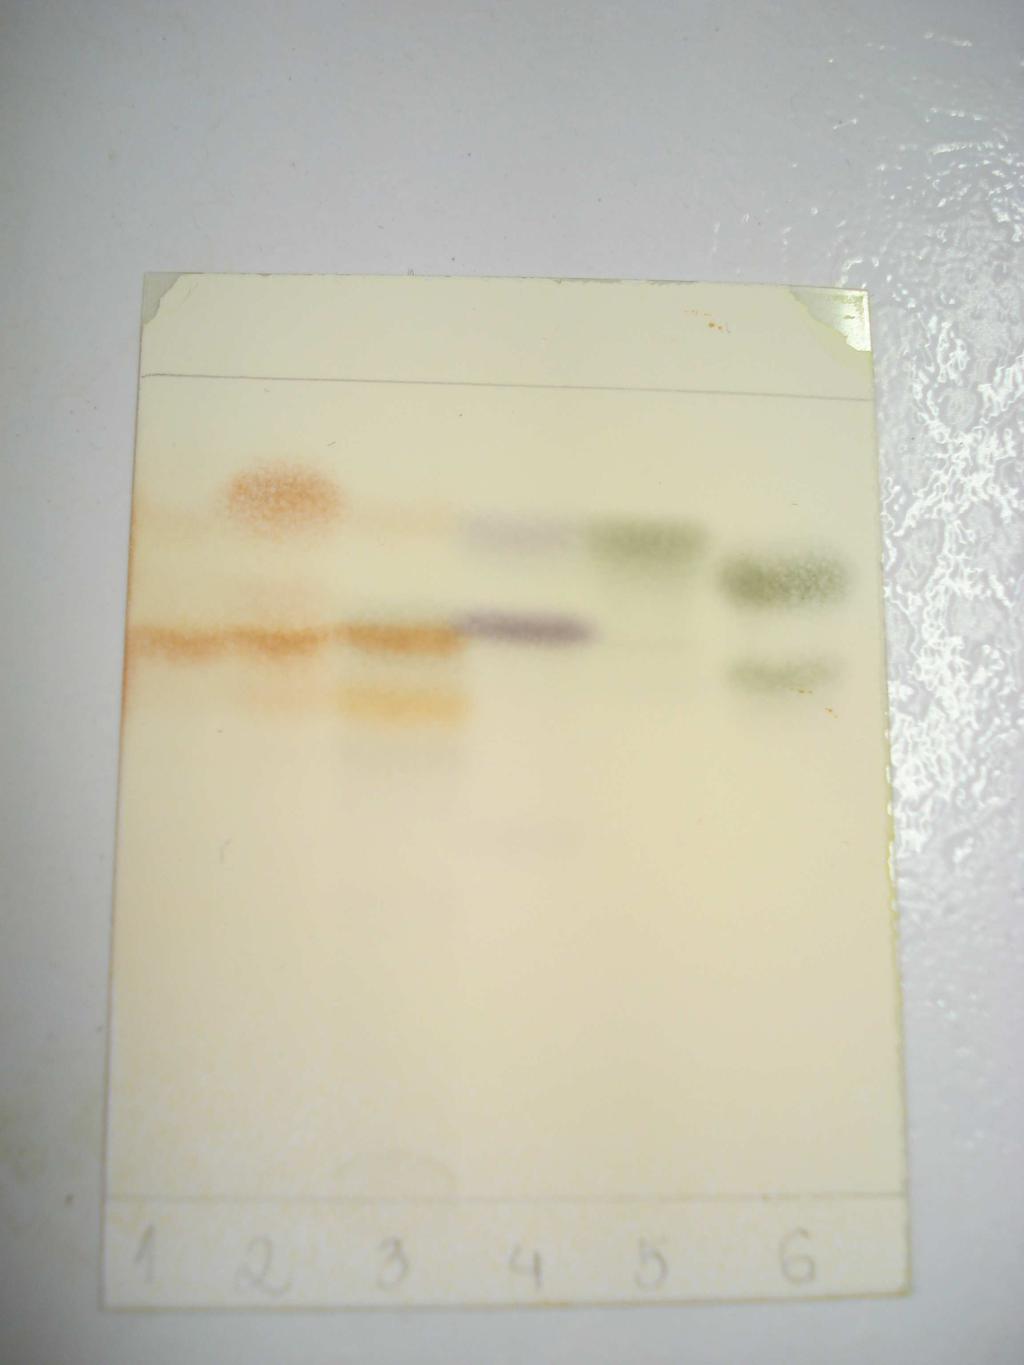 3 Análise das frações OLSx1 a OLSx6 por HPLC com detecção UV As frações provenientes da cromatografia em Sephadex, e o EOP sem fracionamento prévio, foram analisadas por cromatografia líquida de alta